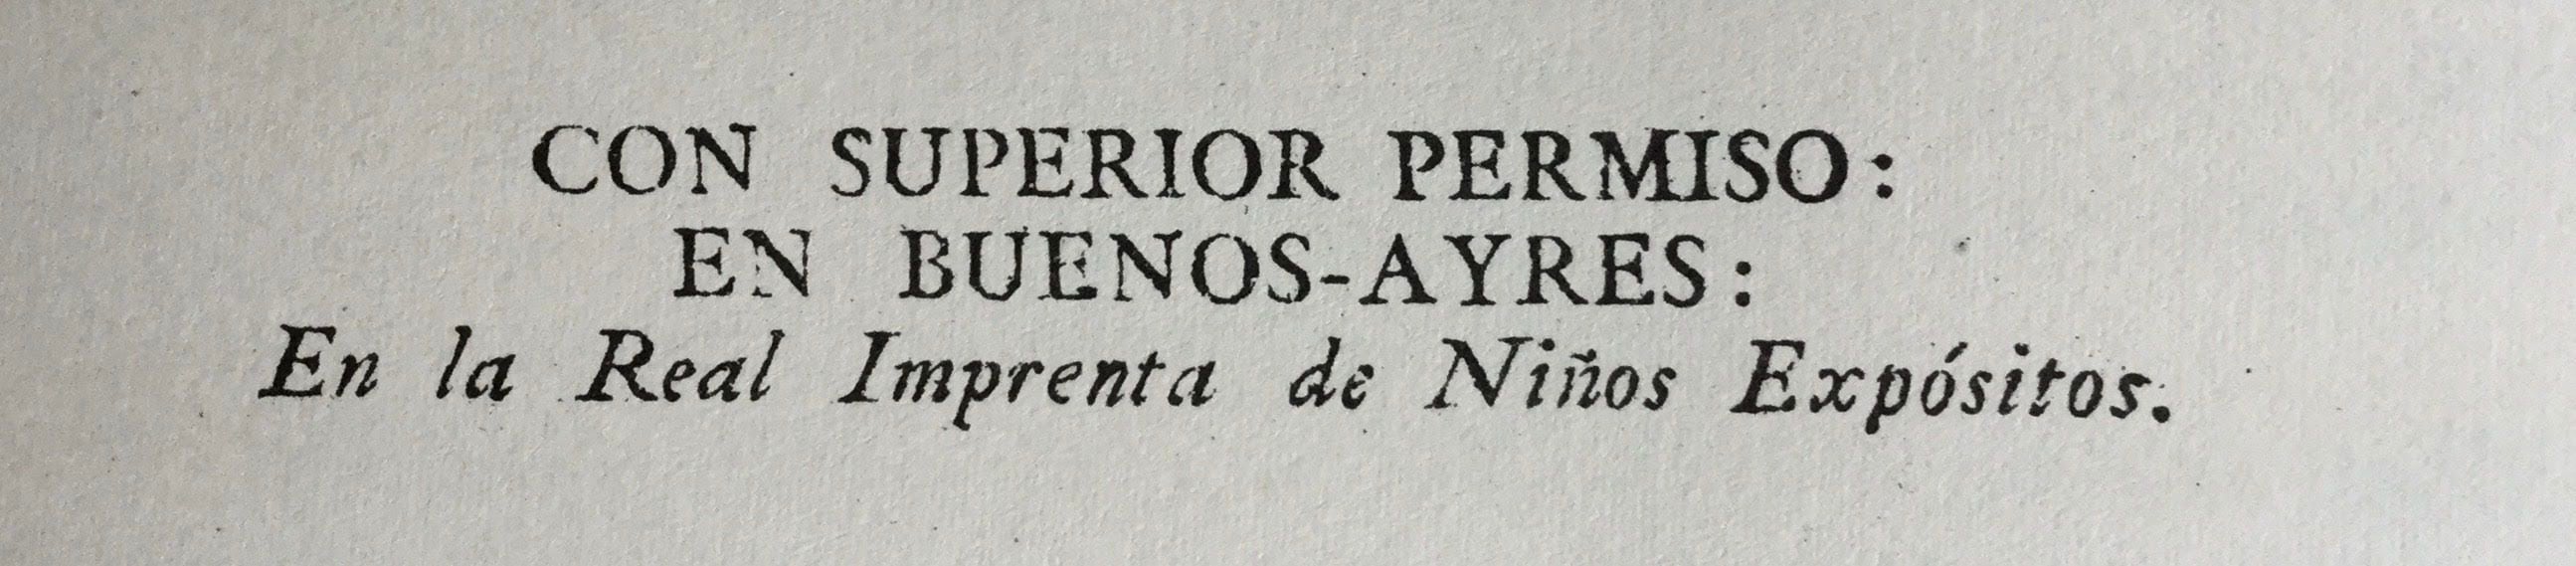 Una marca registrada: en la Real Imprenta  de los Niños Expósitos se realizaban en Buenos Aires desde 1780, todos los trabajos de impresión.